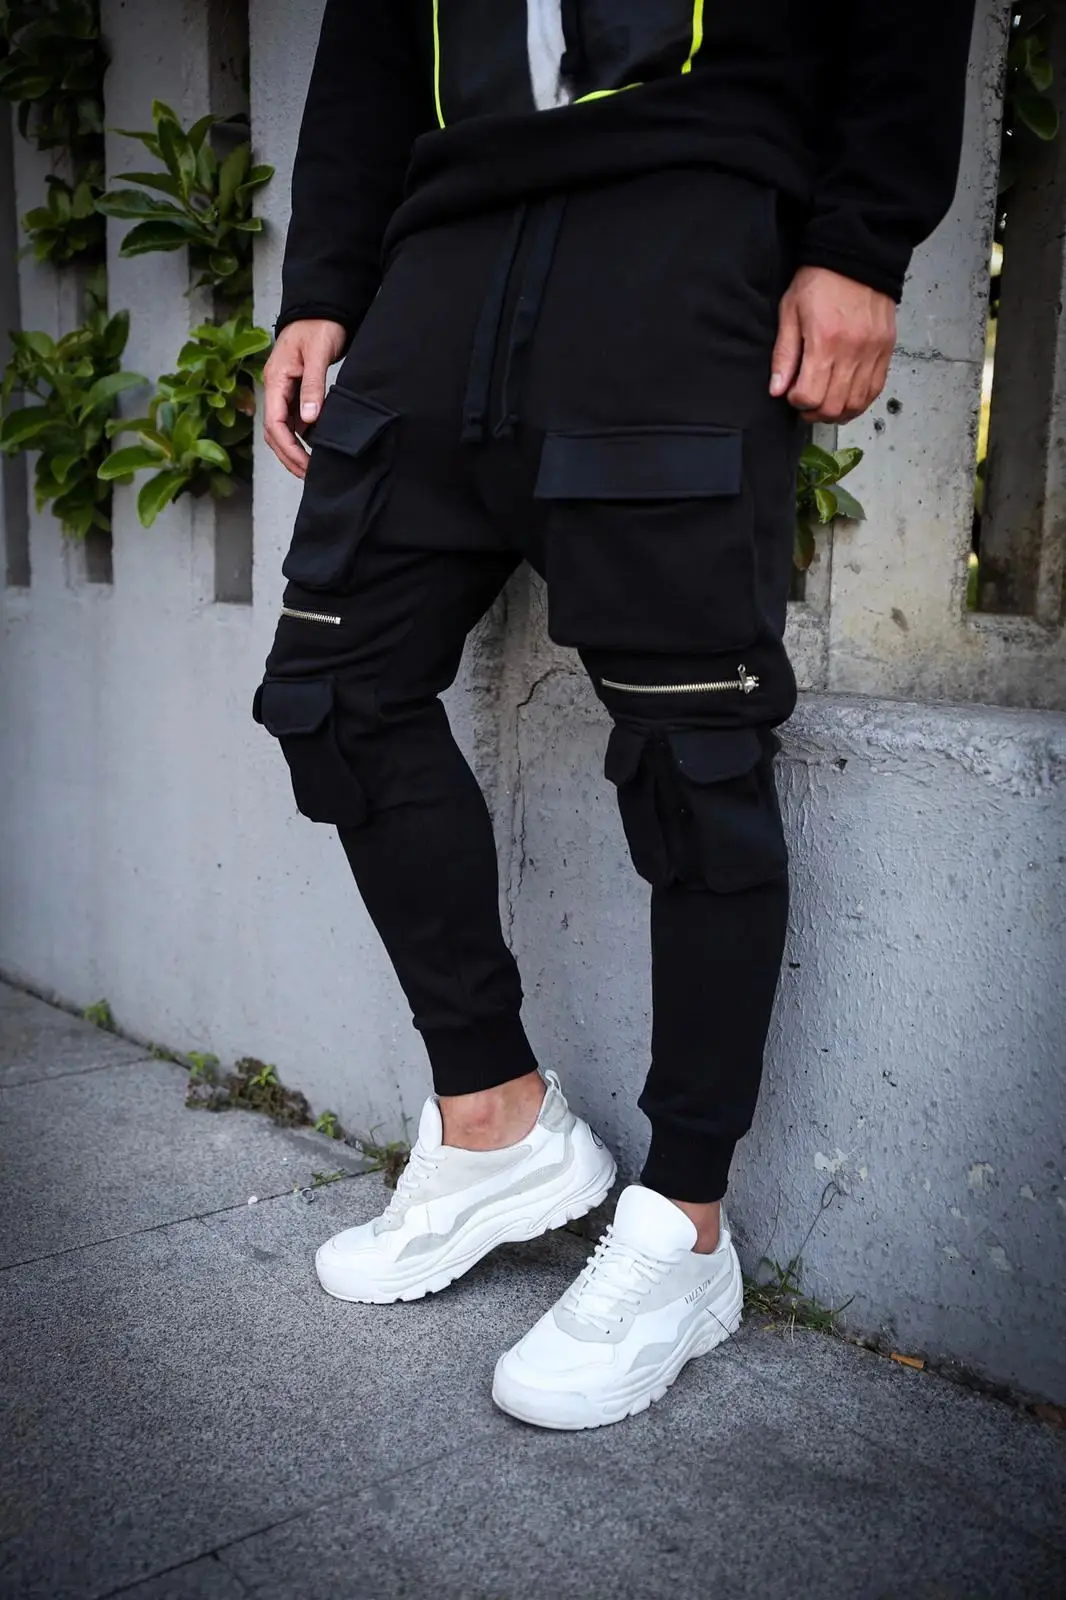 Осень и зима мужской карман хип хоп сплошной цвет фитнес тонкие модные повседневные спортивные брюки